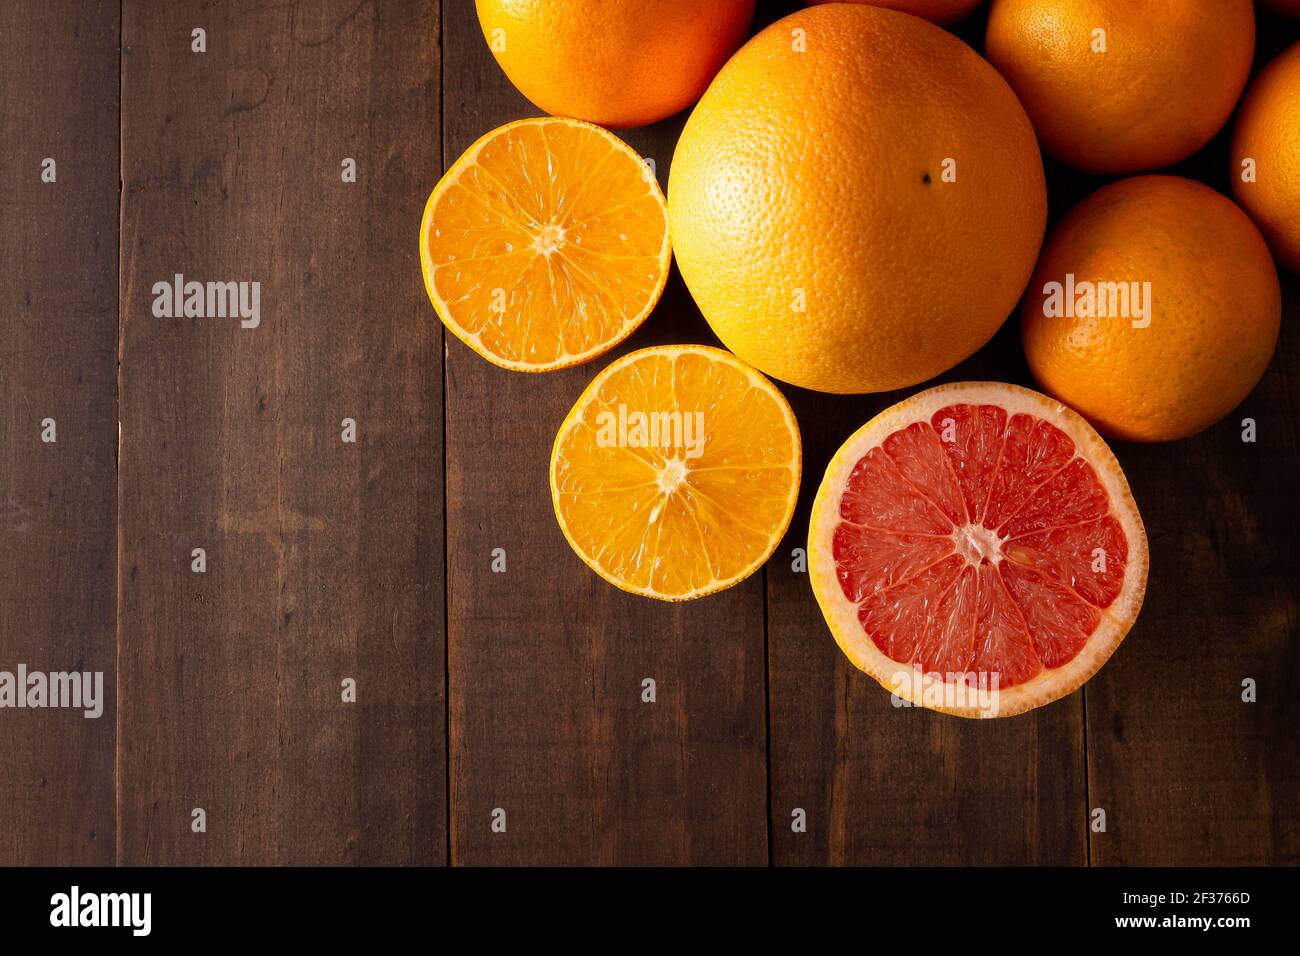 Draufsicht Bild von reifen Orange und Grapefruit Scheiben und Mehrere ganze Orangen auf braunem rustikalem Holztisch mit Kopie Platz Stockfoto